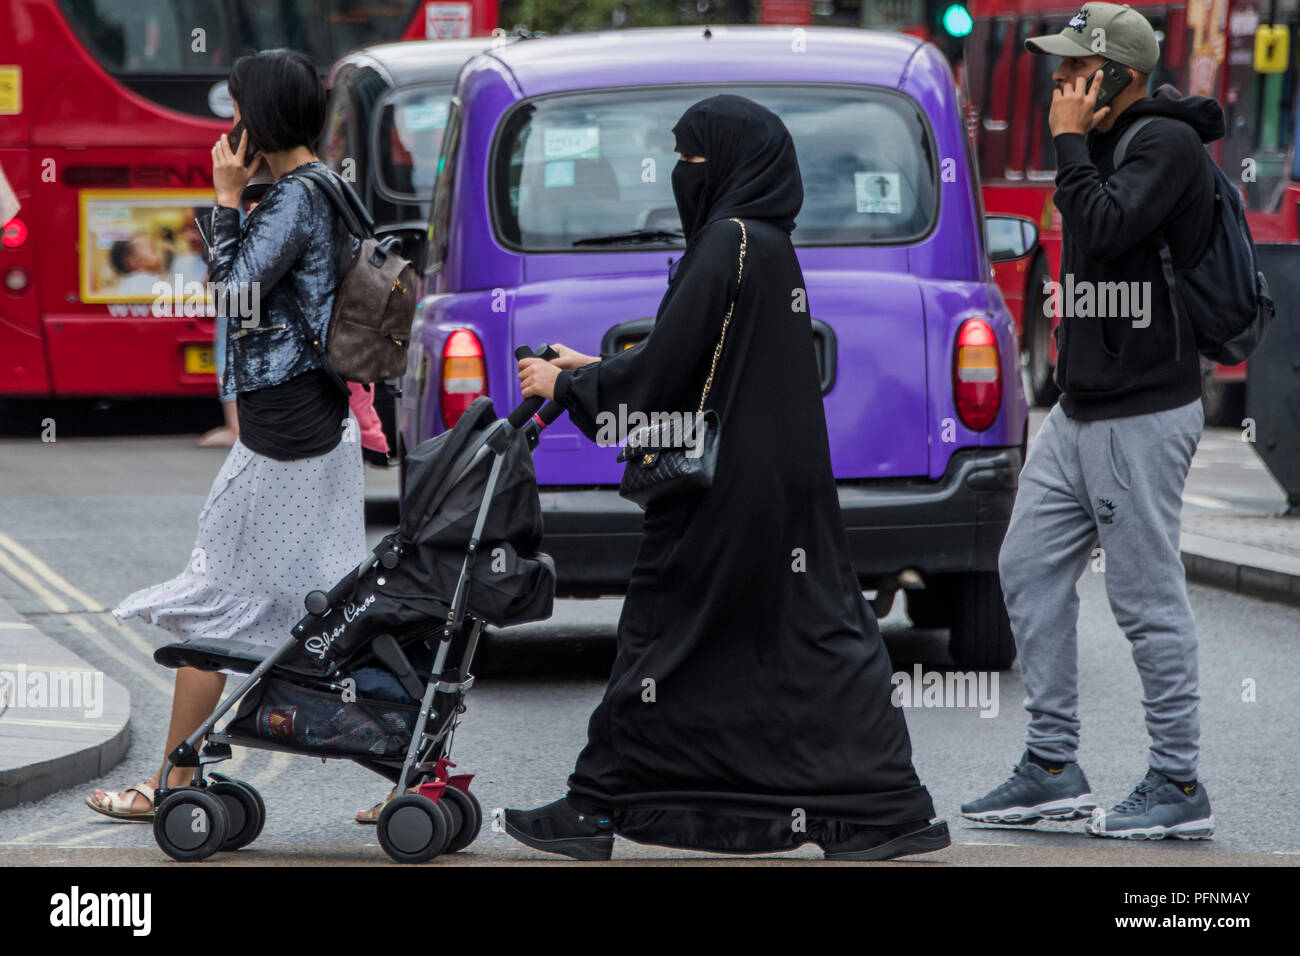 Londres, Royaume-Uni. Le 22 août, 2018. Une femme musulmane dans un hijab et burka pousse un landau dans Oxford Street - une vue normale dans la foule mêlée de shopping. Crédit : Guy Bell/Alamy Live News Banque D'Images